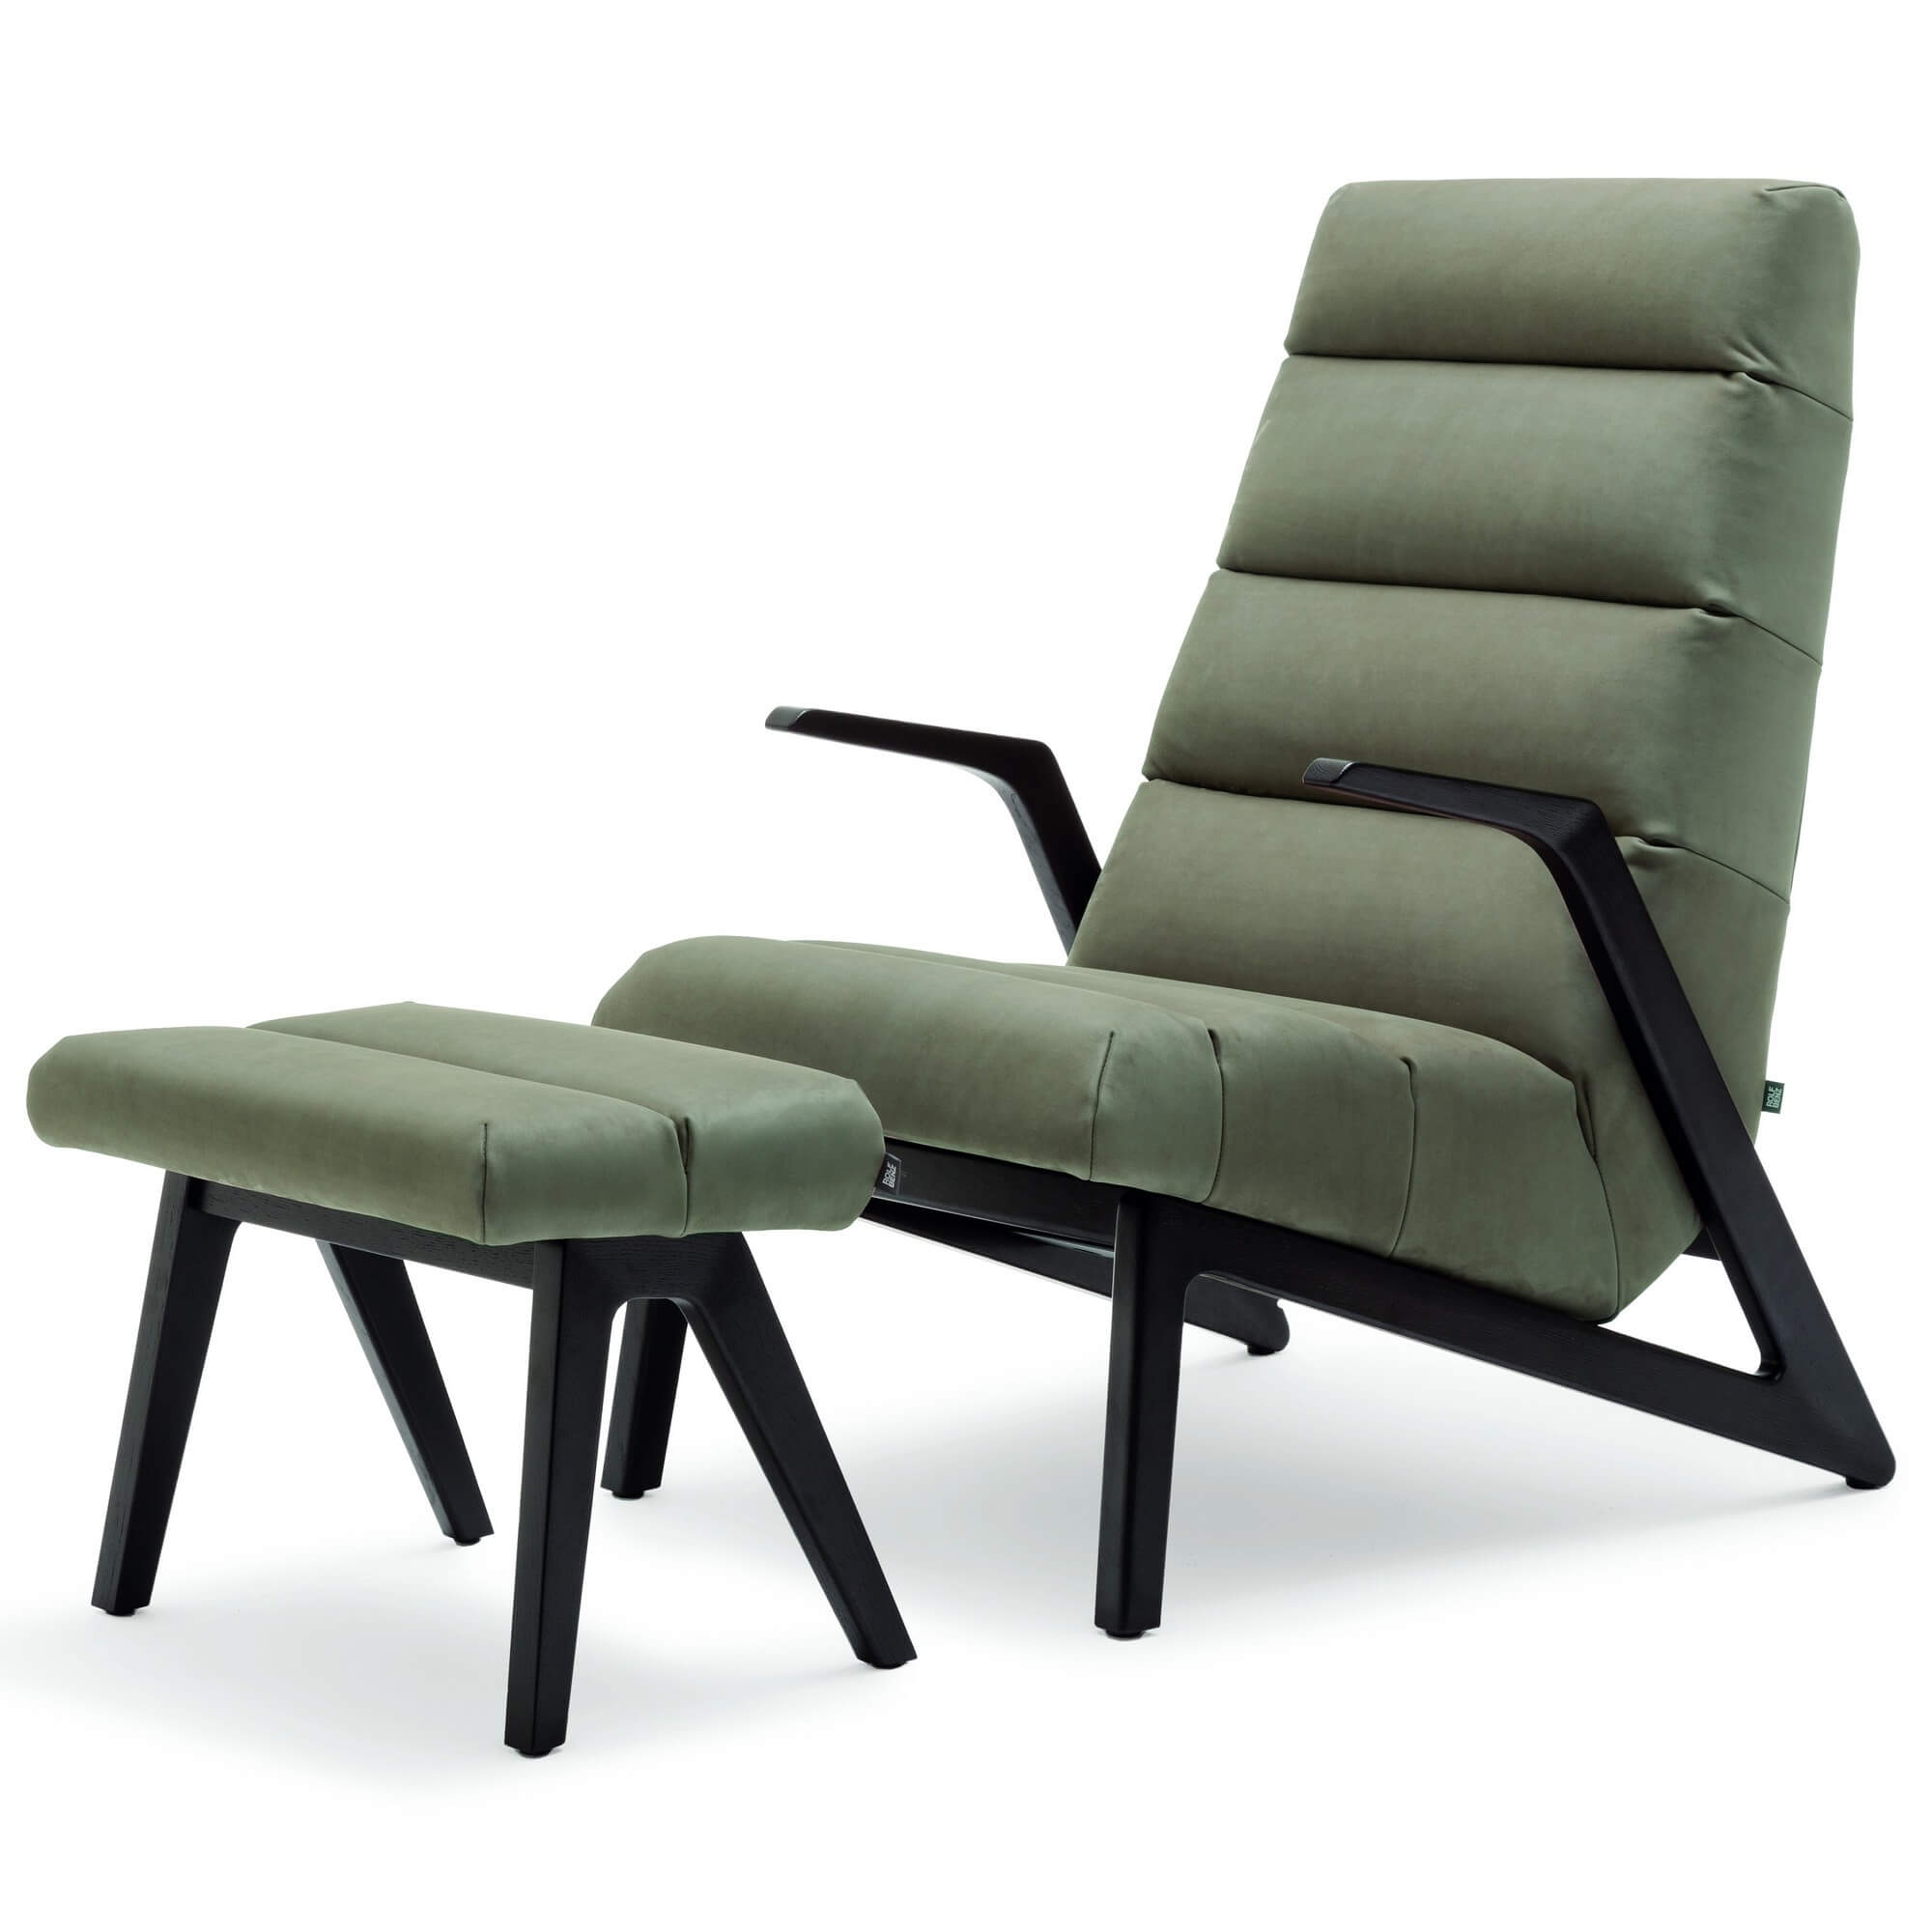 Дизайнерское кожаное кресло Rolf Benz 580 из Германии